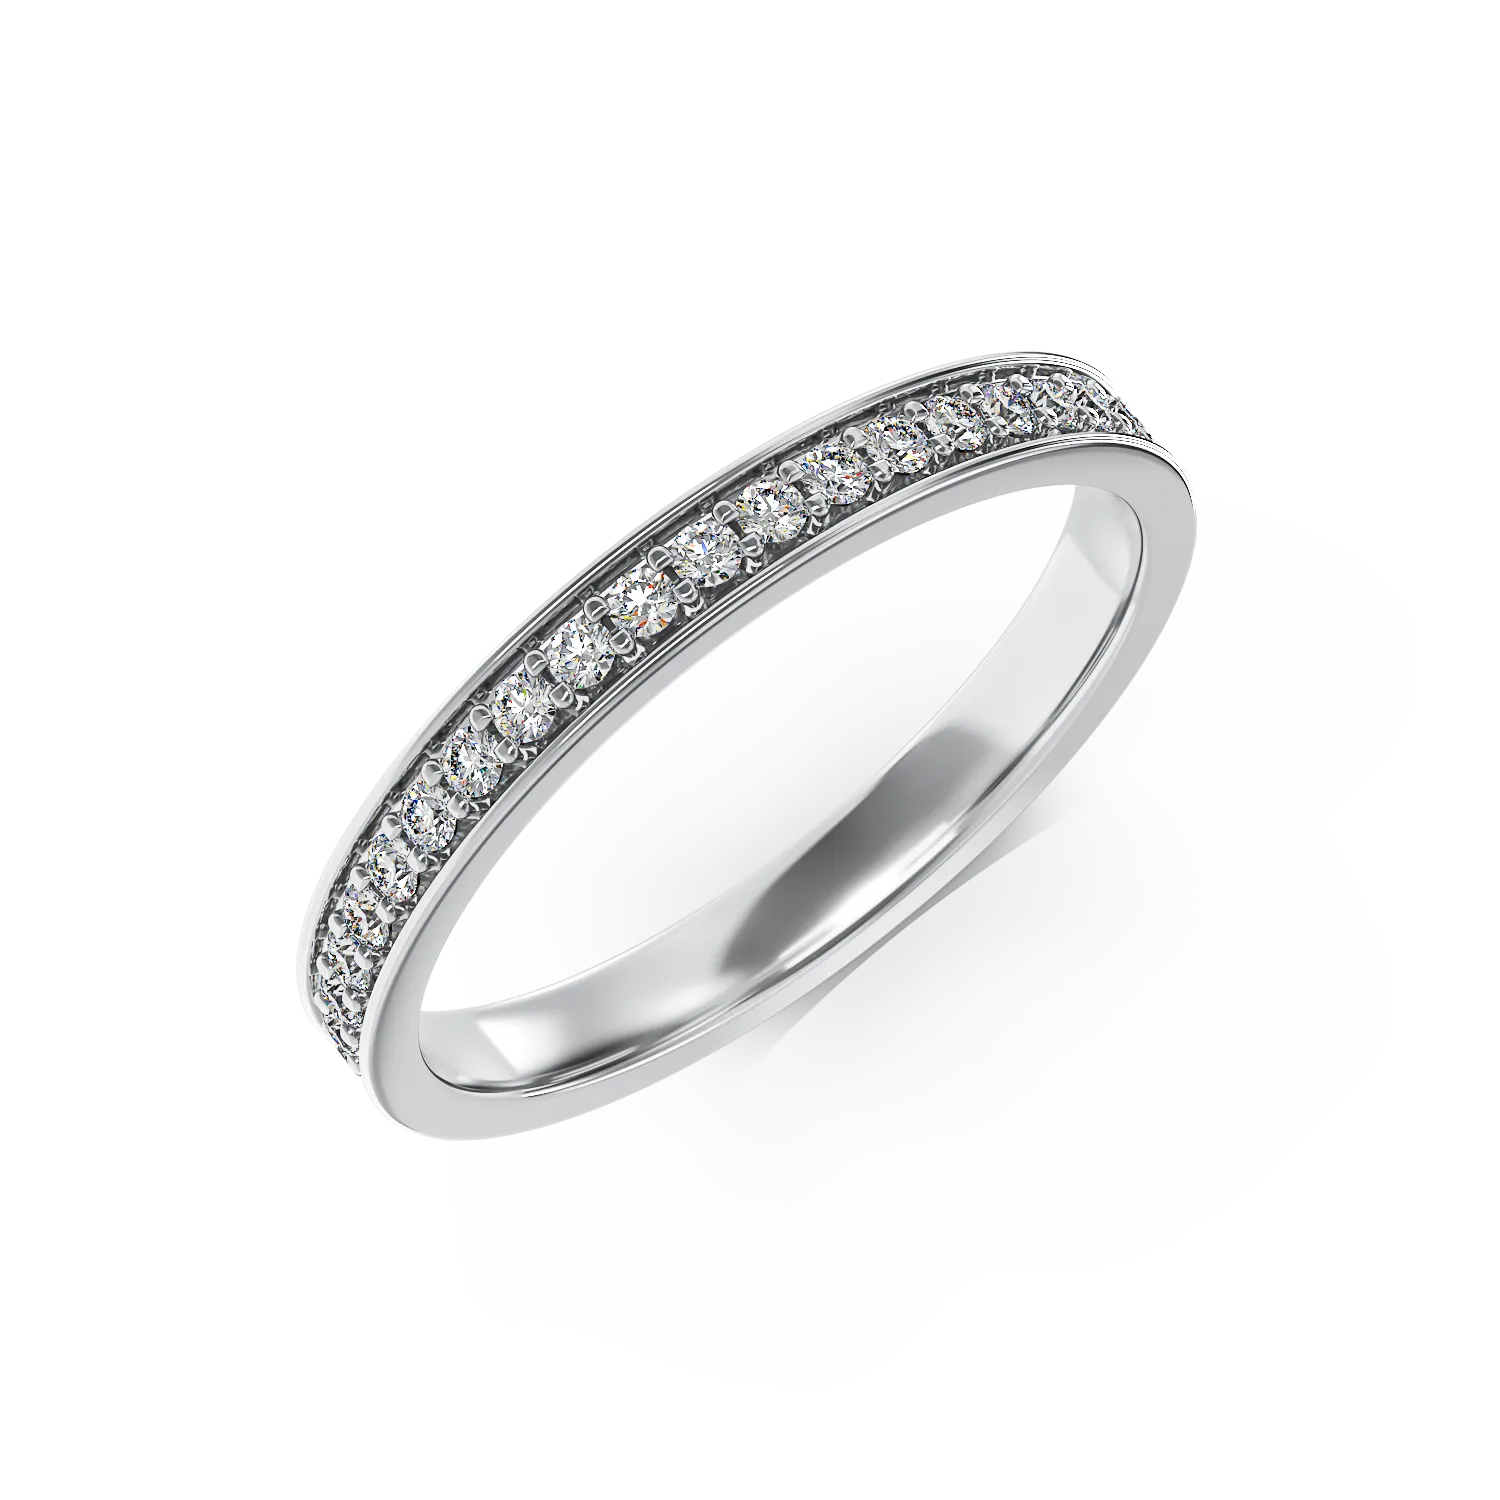 Örökkévalóság gyűrű fehér aranyból 0.3ct gyémántokkal